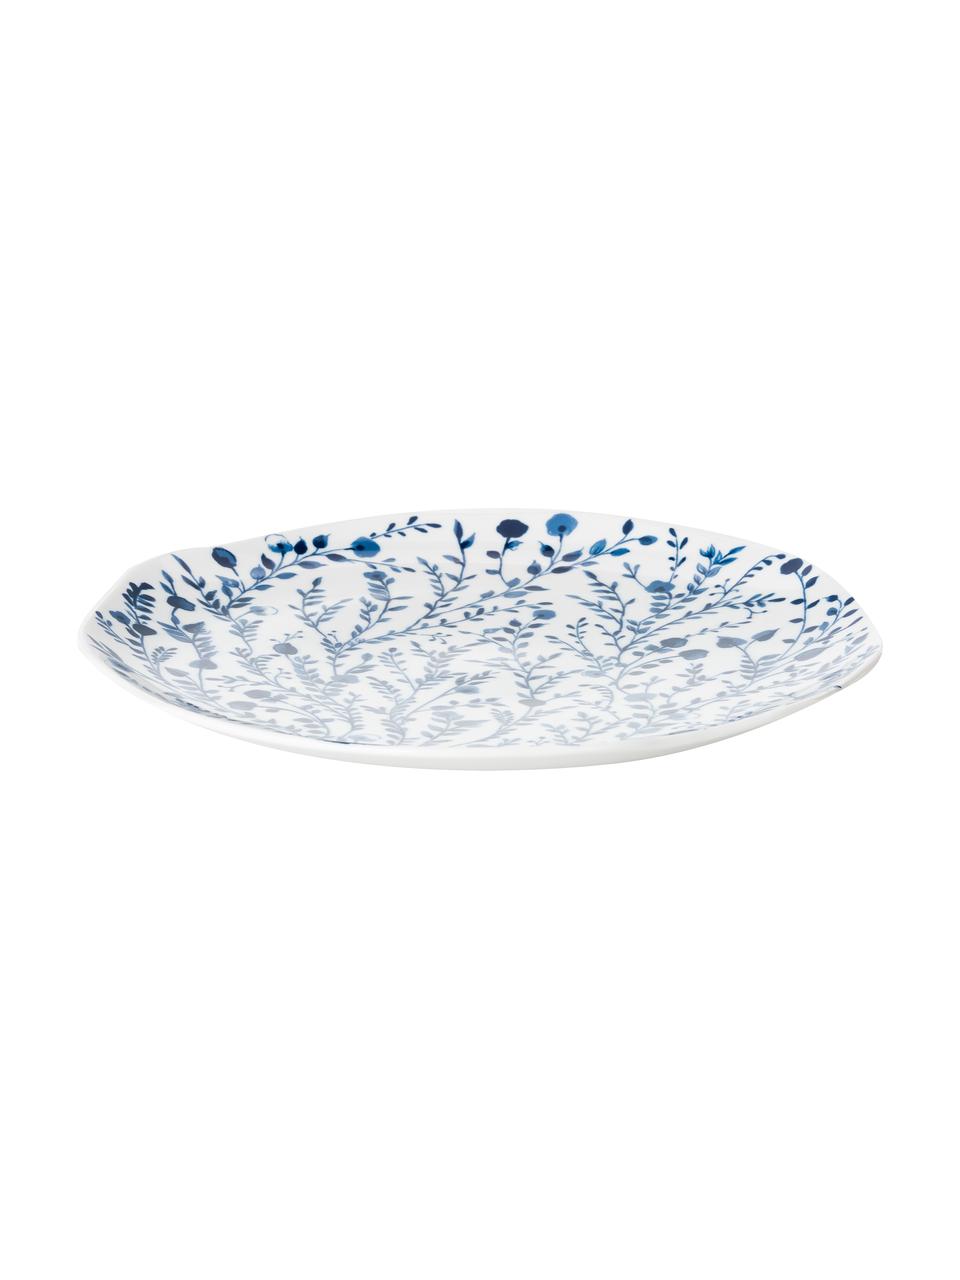 Platos llanos Vassoio, 6 uds., Porcelana, Azul, blanco, Ø 27 cm